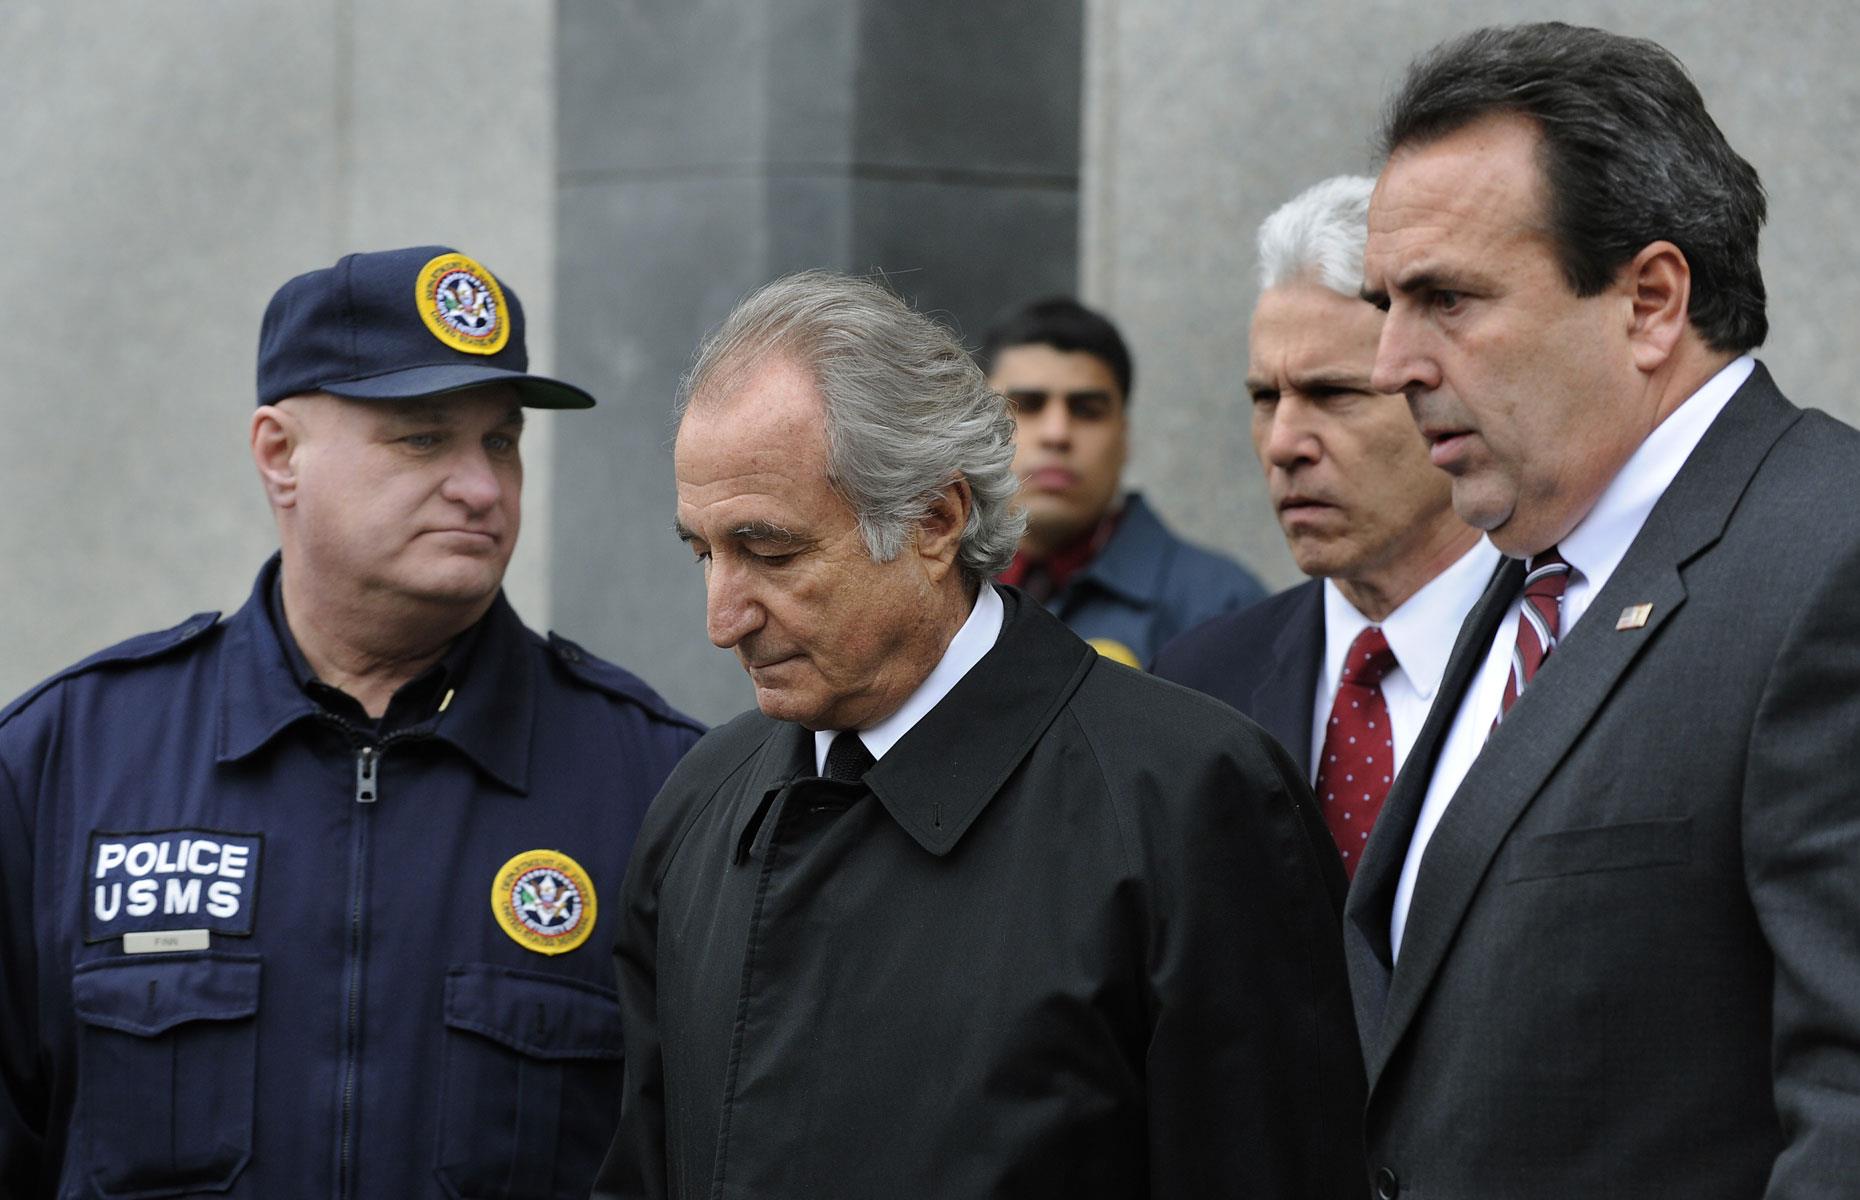 Bernard Madoff: 150-year sentence